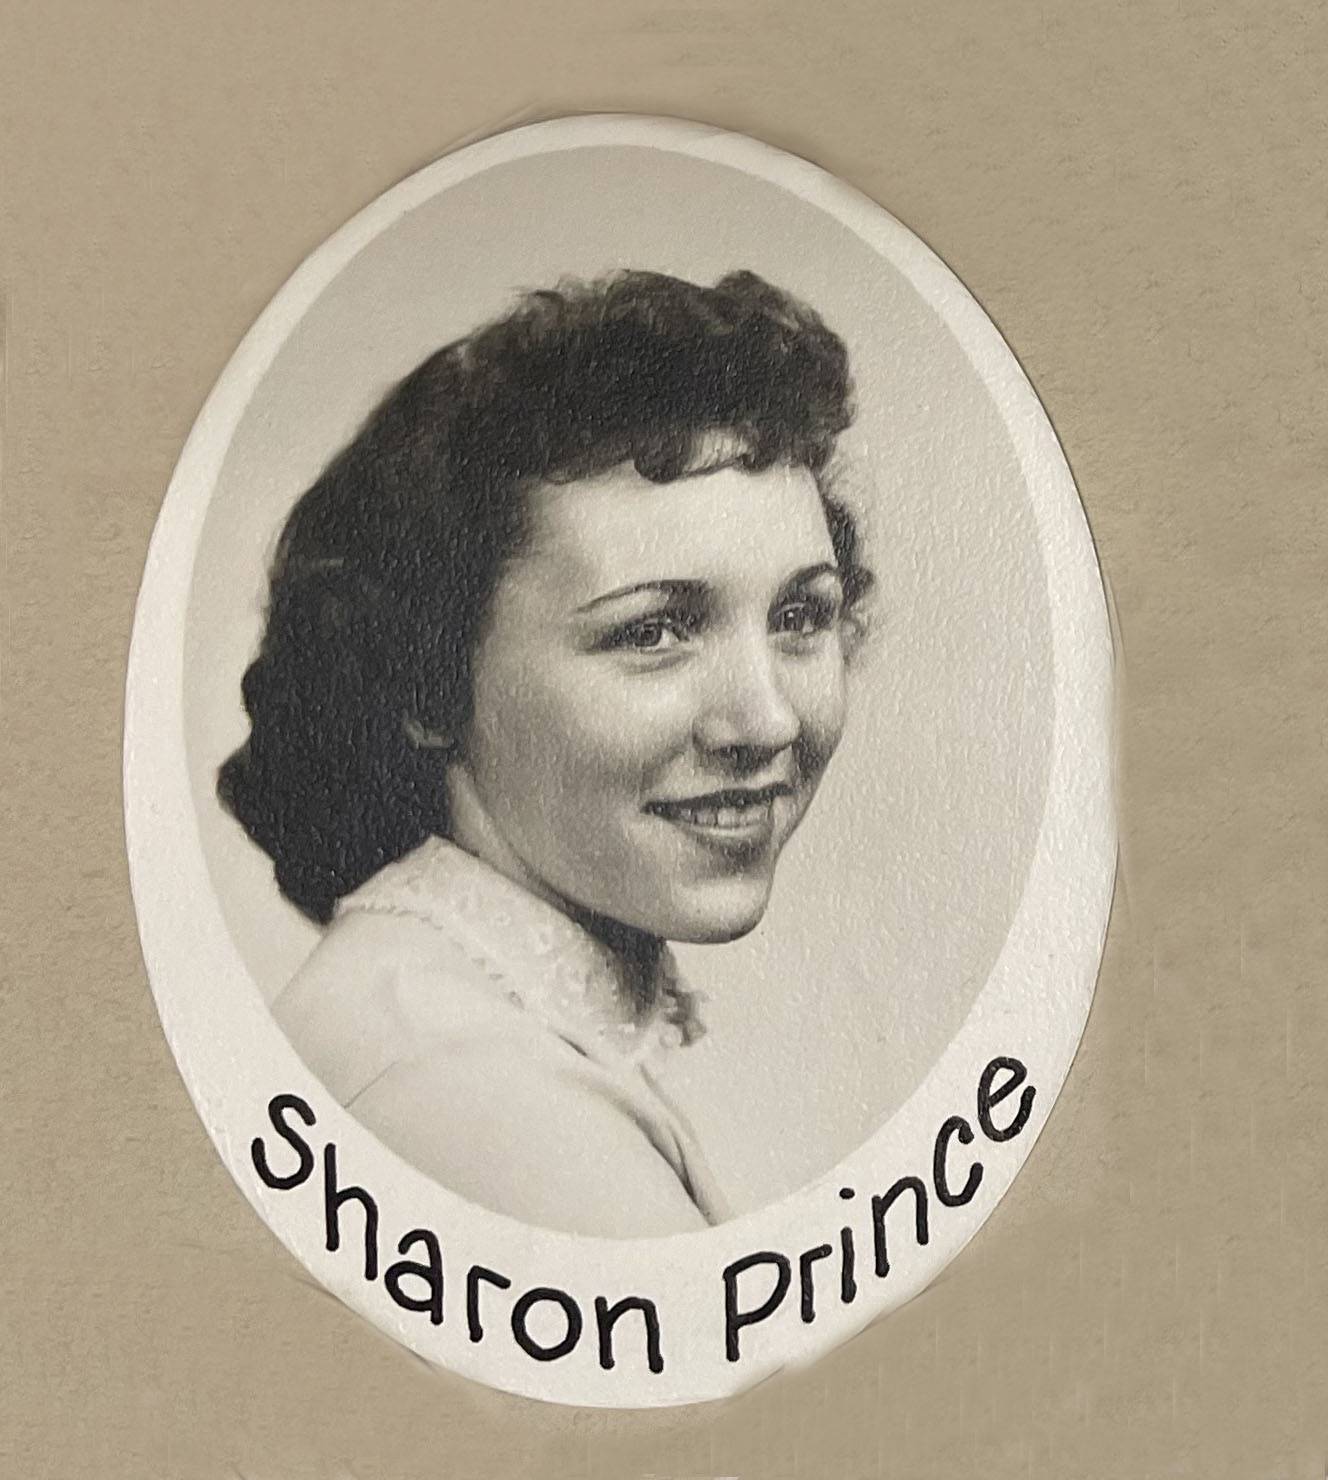 Sharon Prince